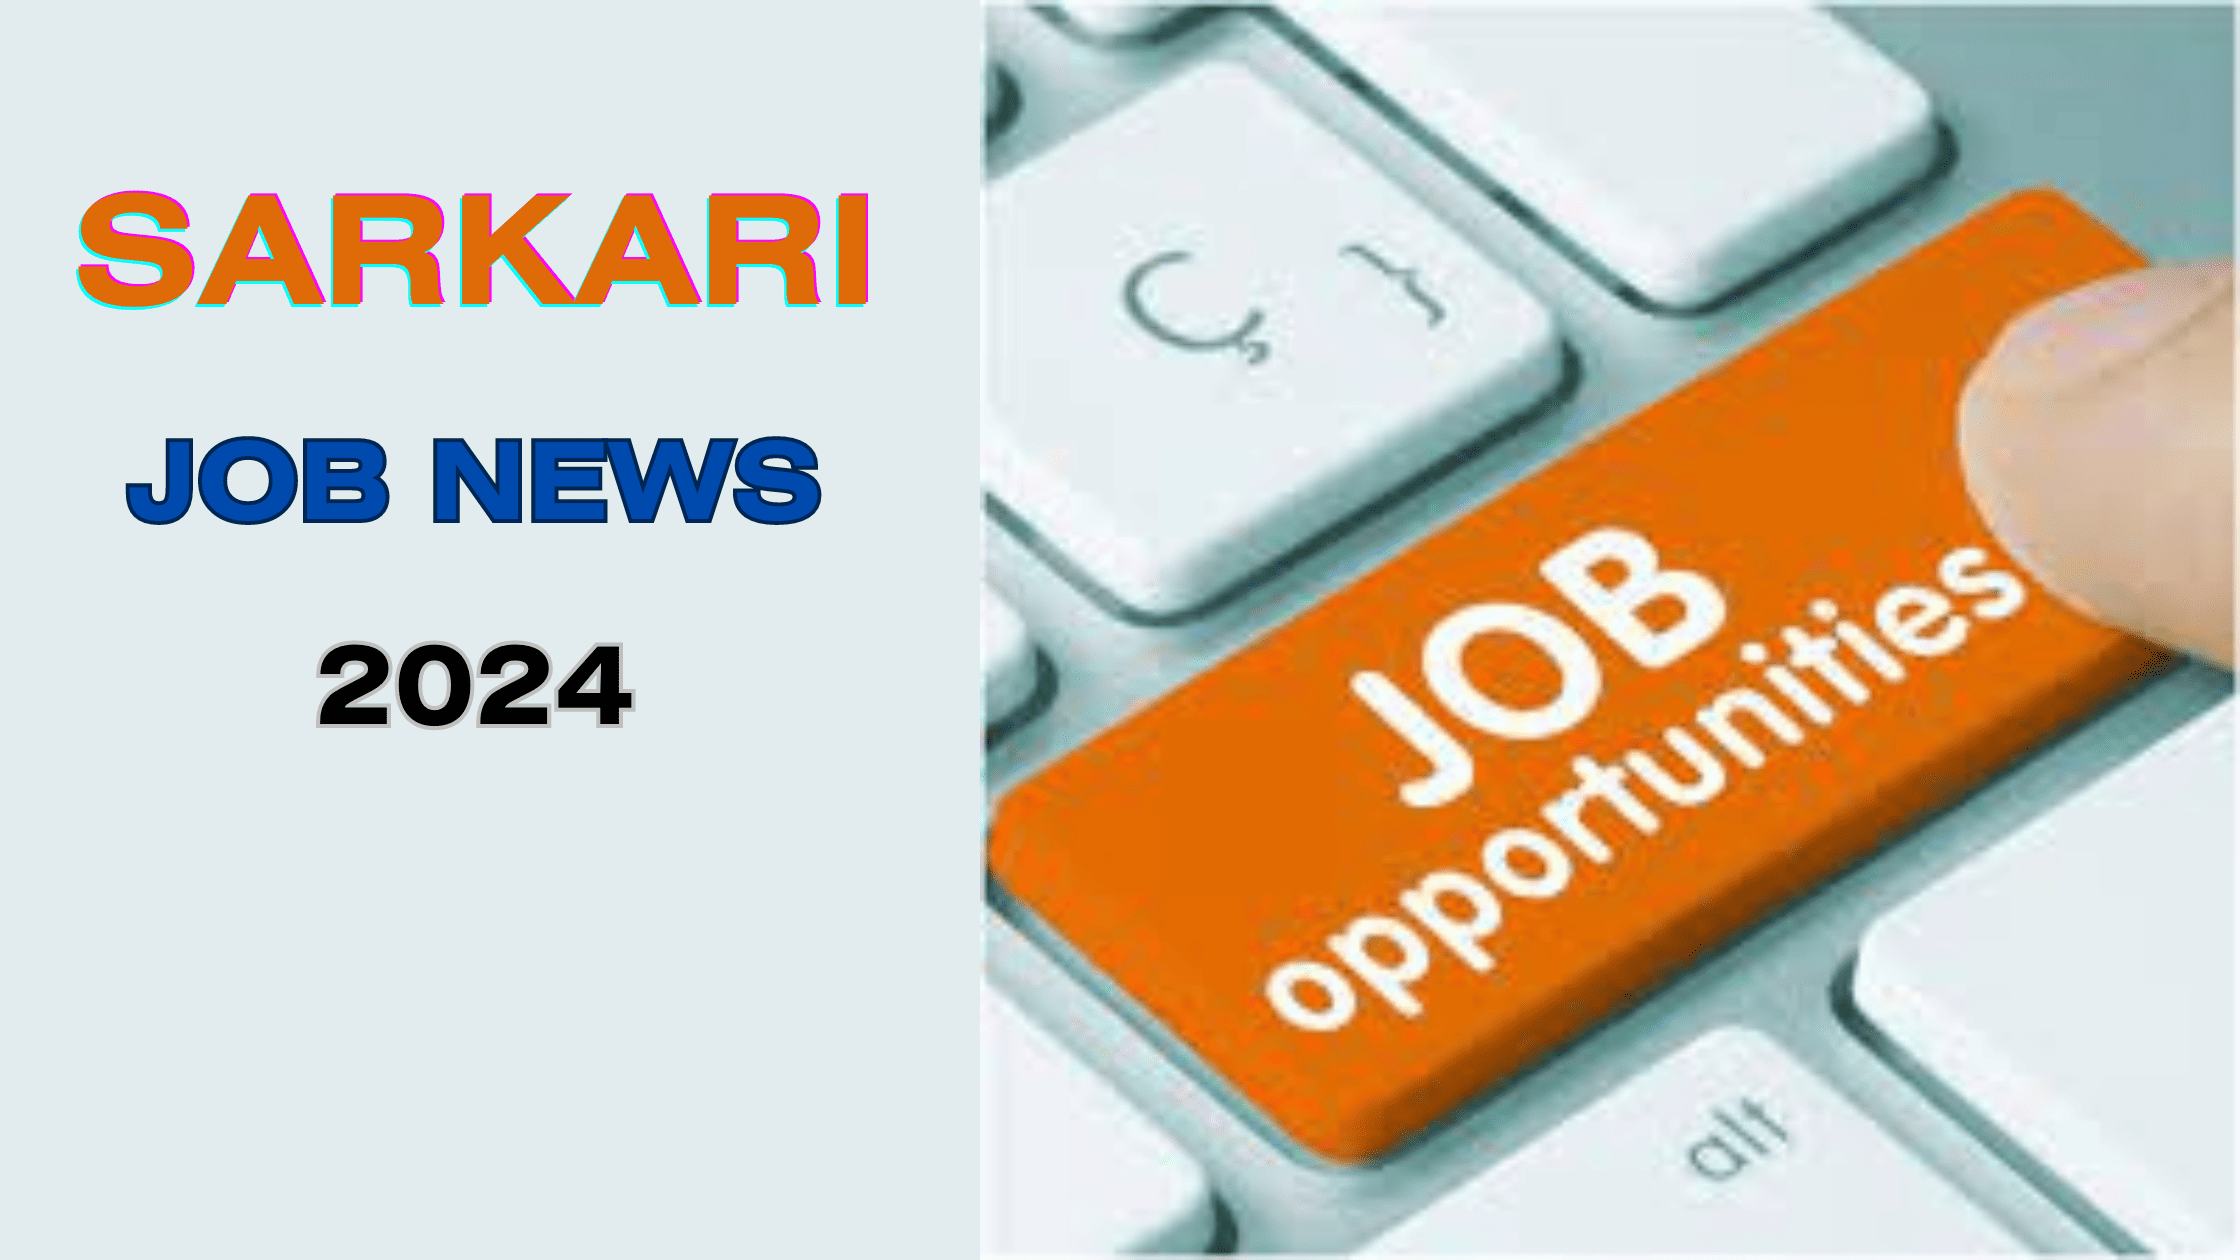 Sarkari Job News 2024